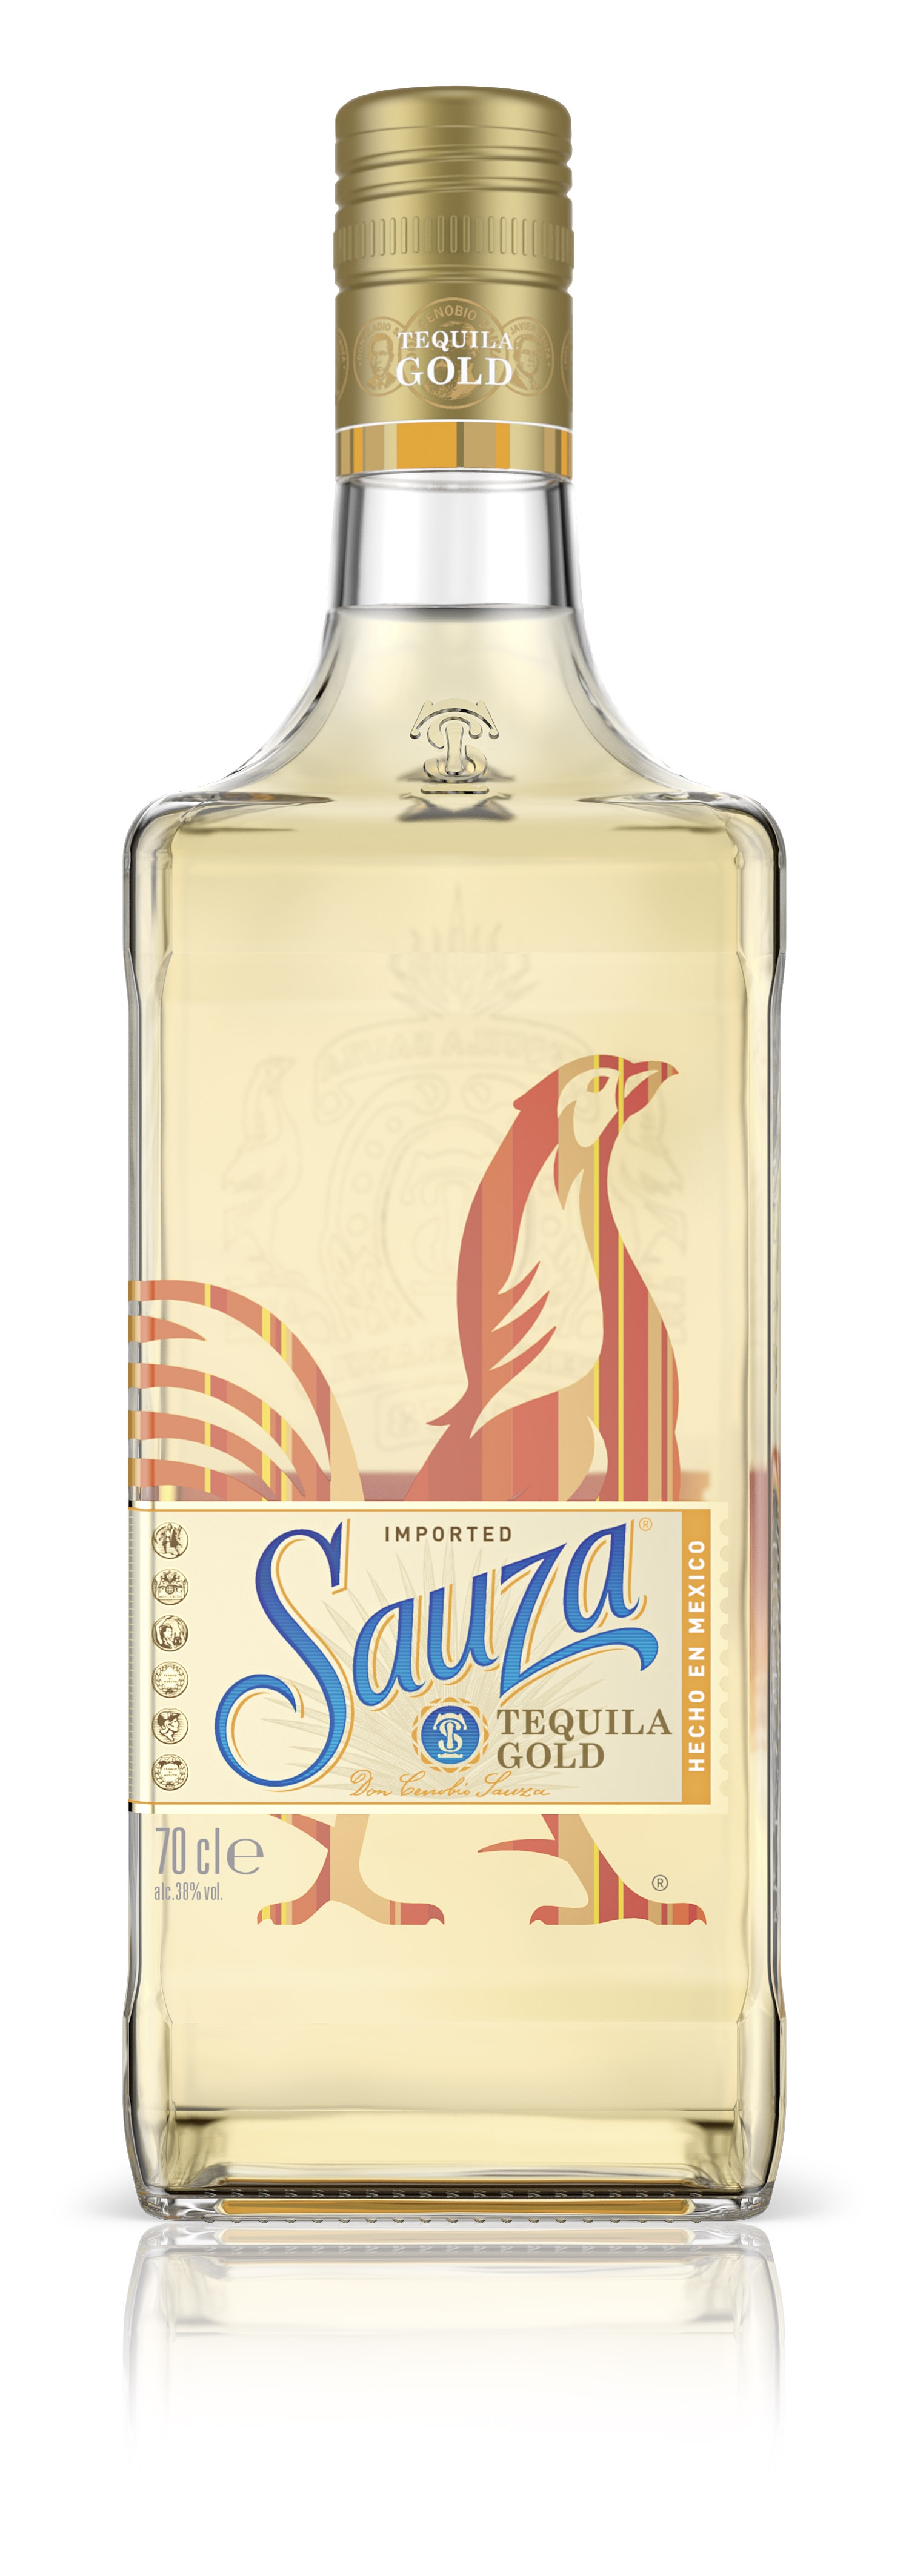 Tequila Gold der Marke Sauza 38% 0,7l Flasche